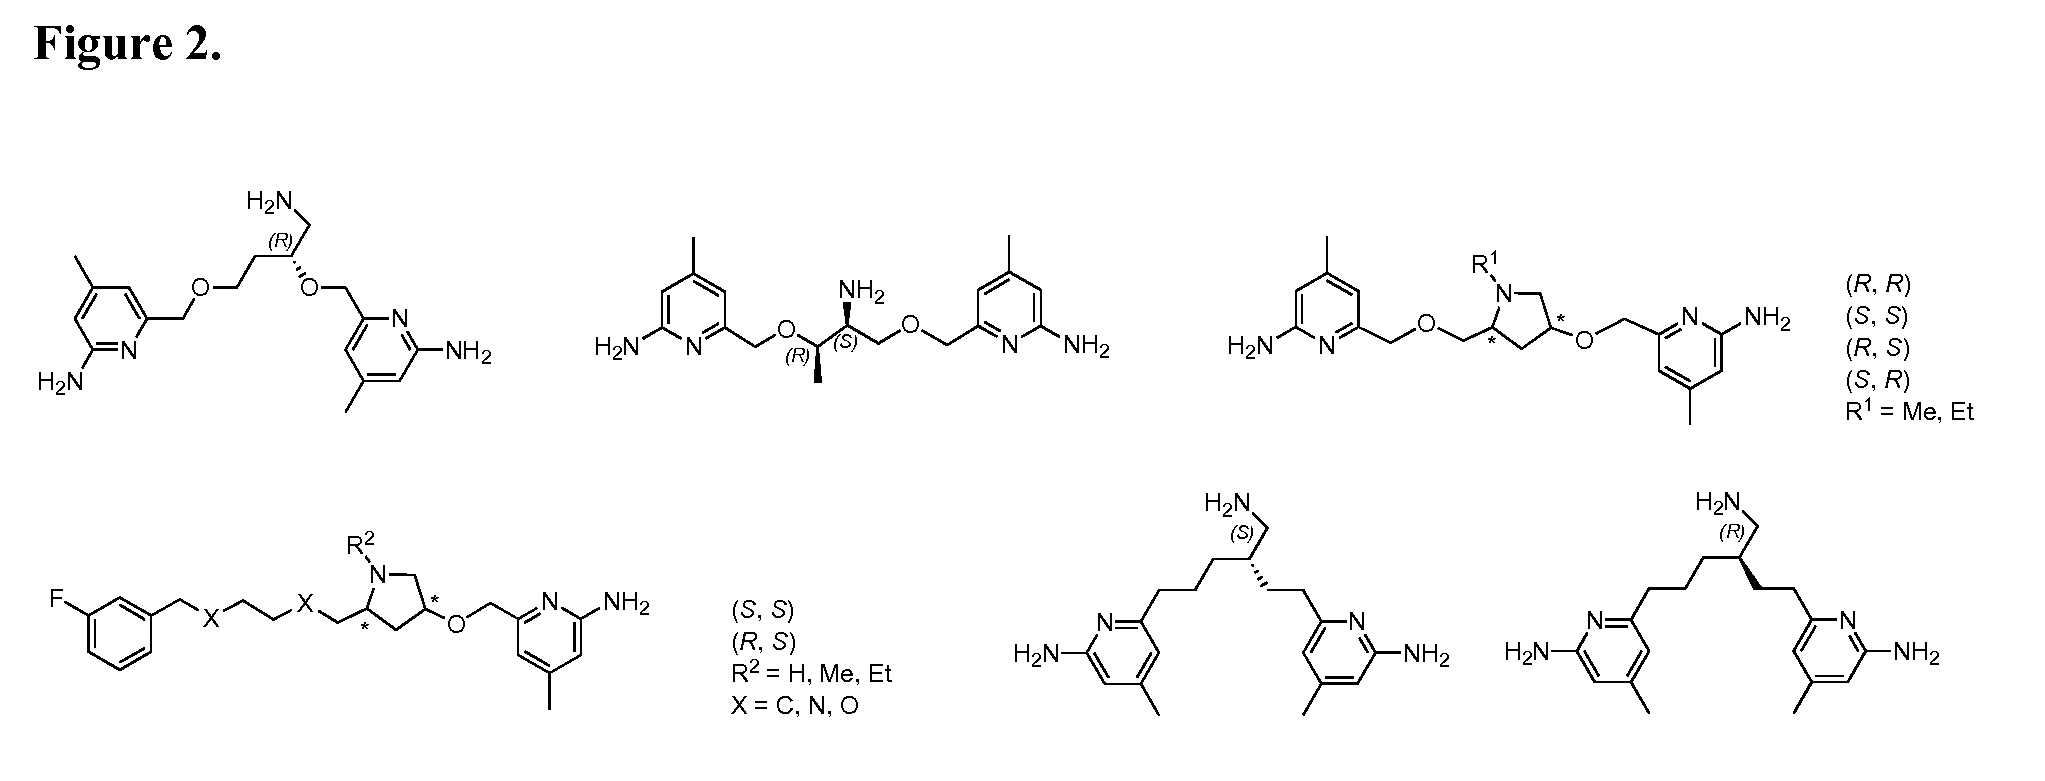 2-Aminopyridine-based selective neuronal nitric oxide synthase inhibitors